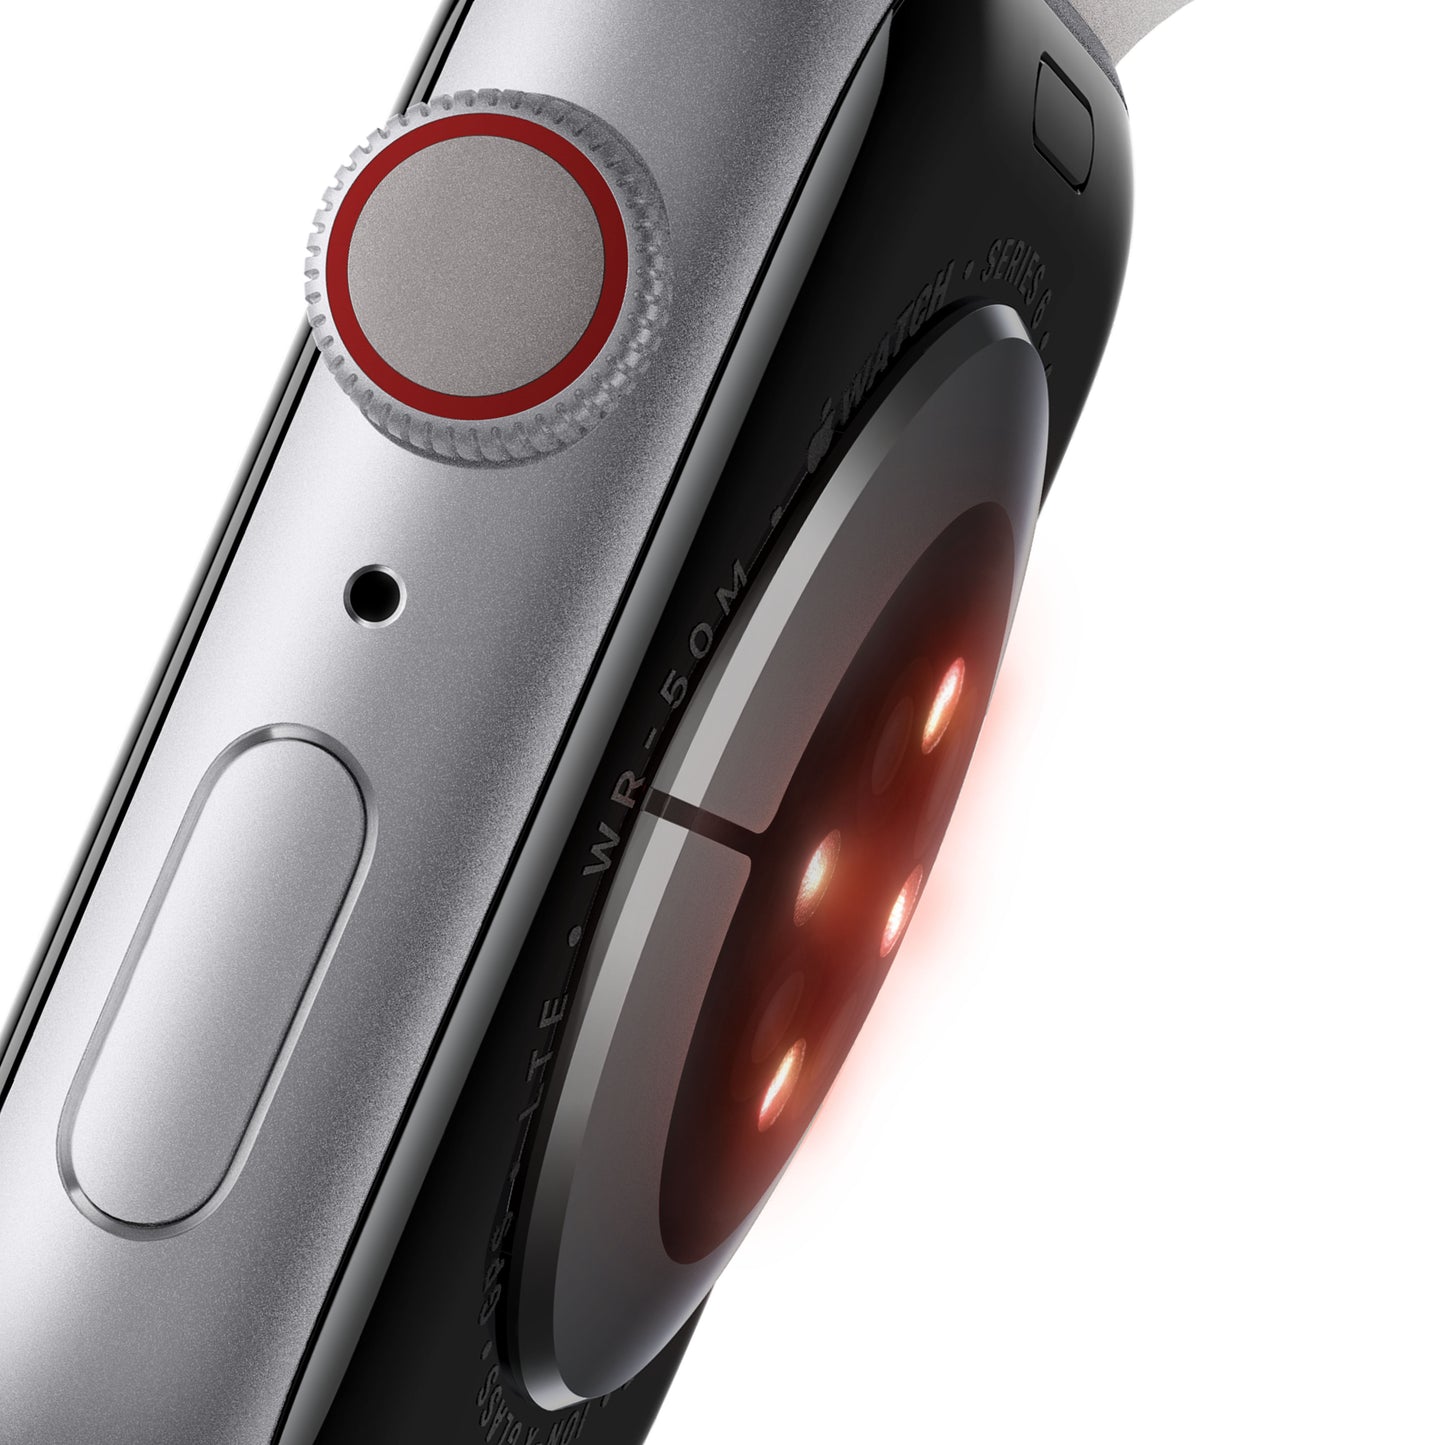 Apple Watch Series 6 (GPS + Cellular) - Caja de aluminio (PRODUCT)RED de 40 mm - Correa deportiva (PRODUCT)RED - Talla única